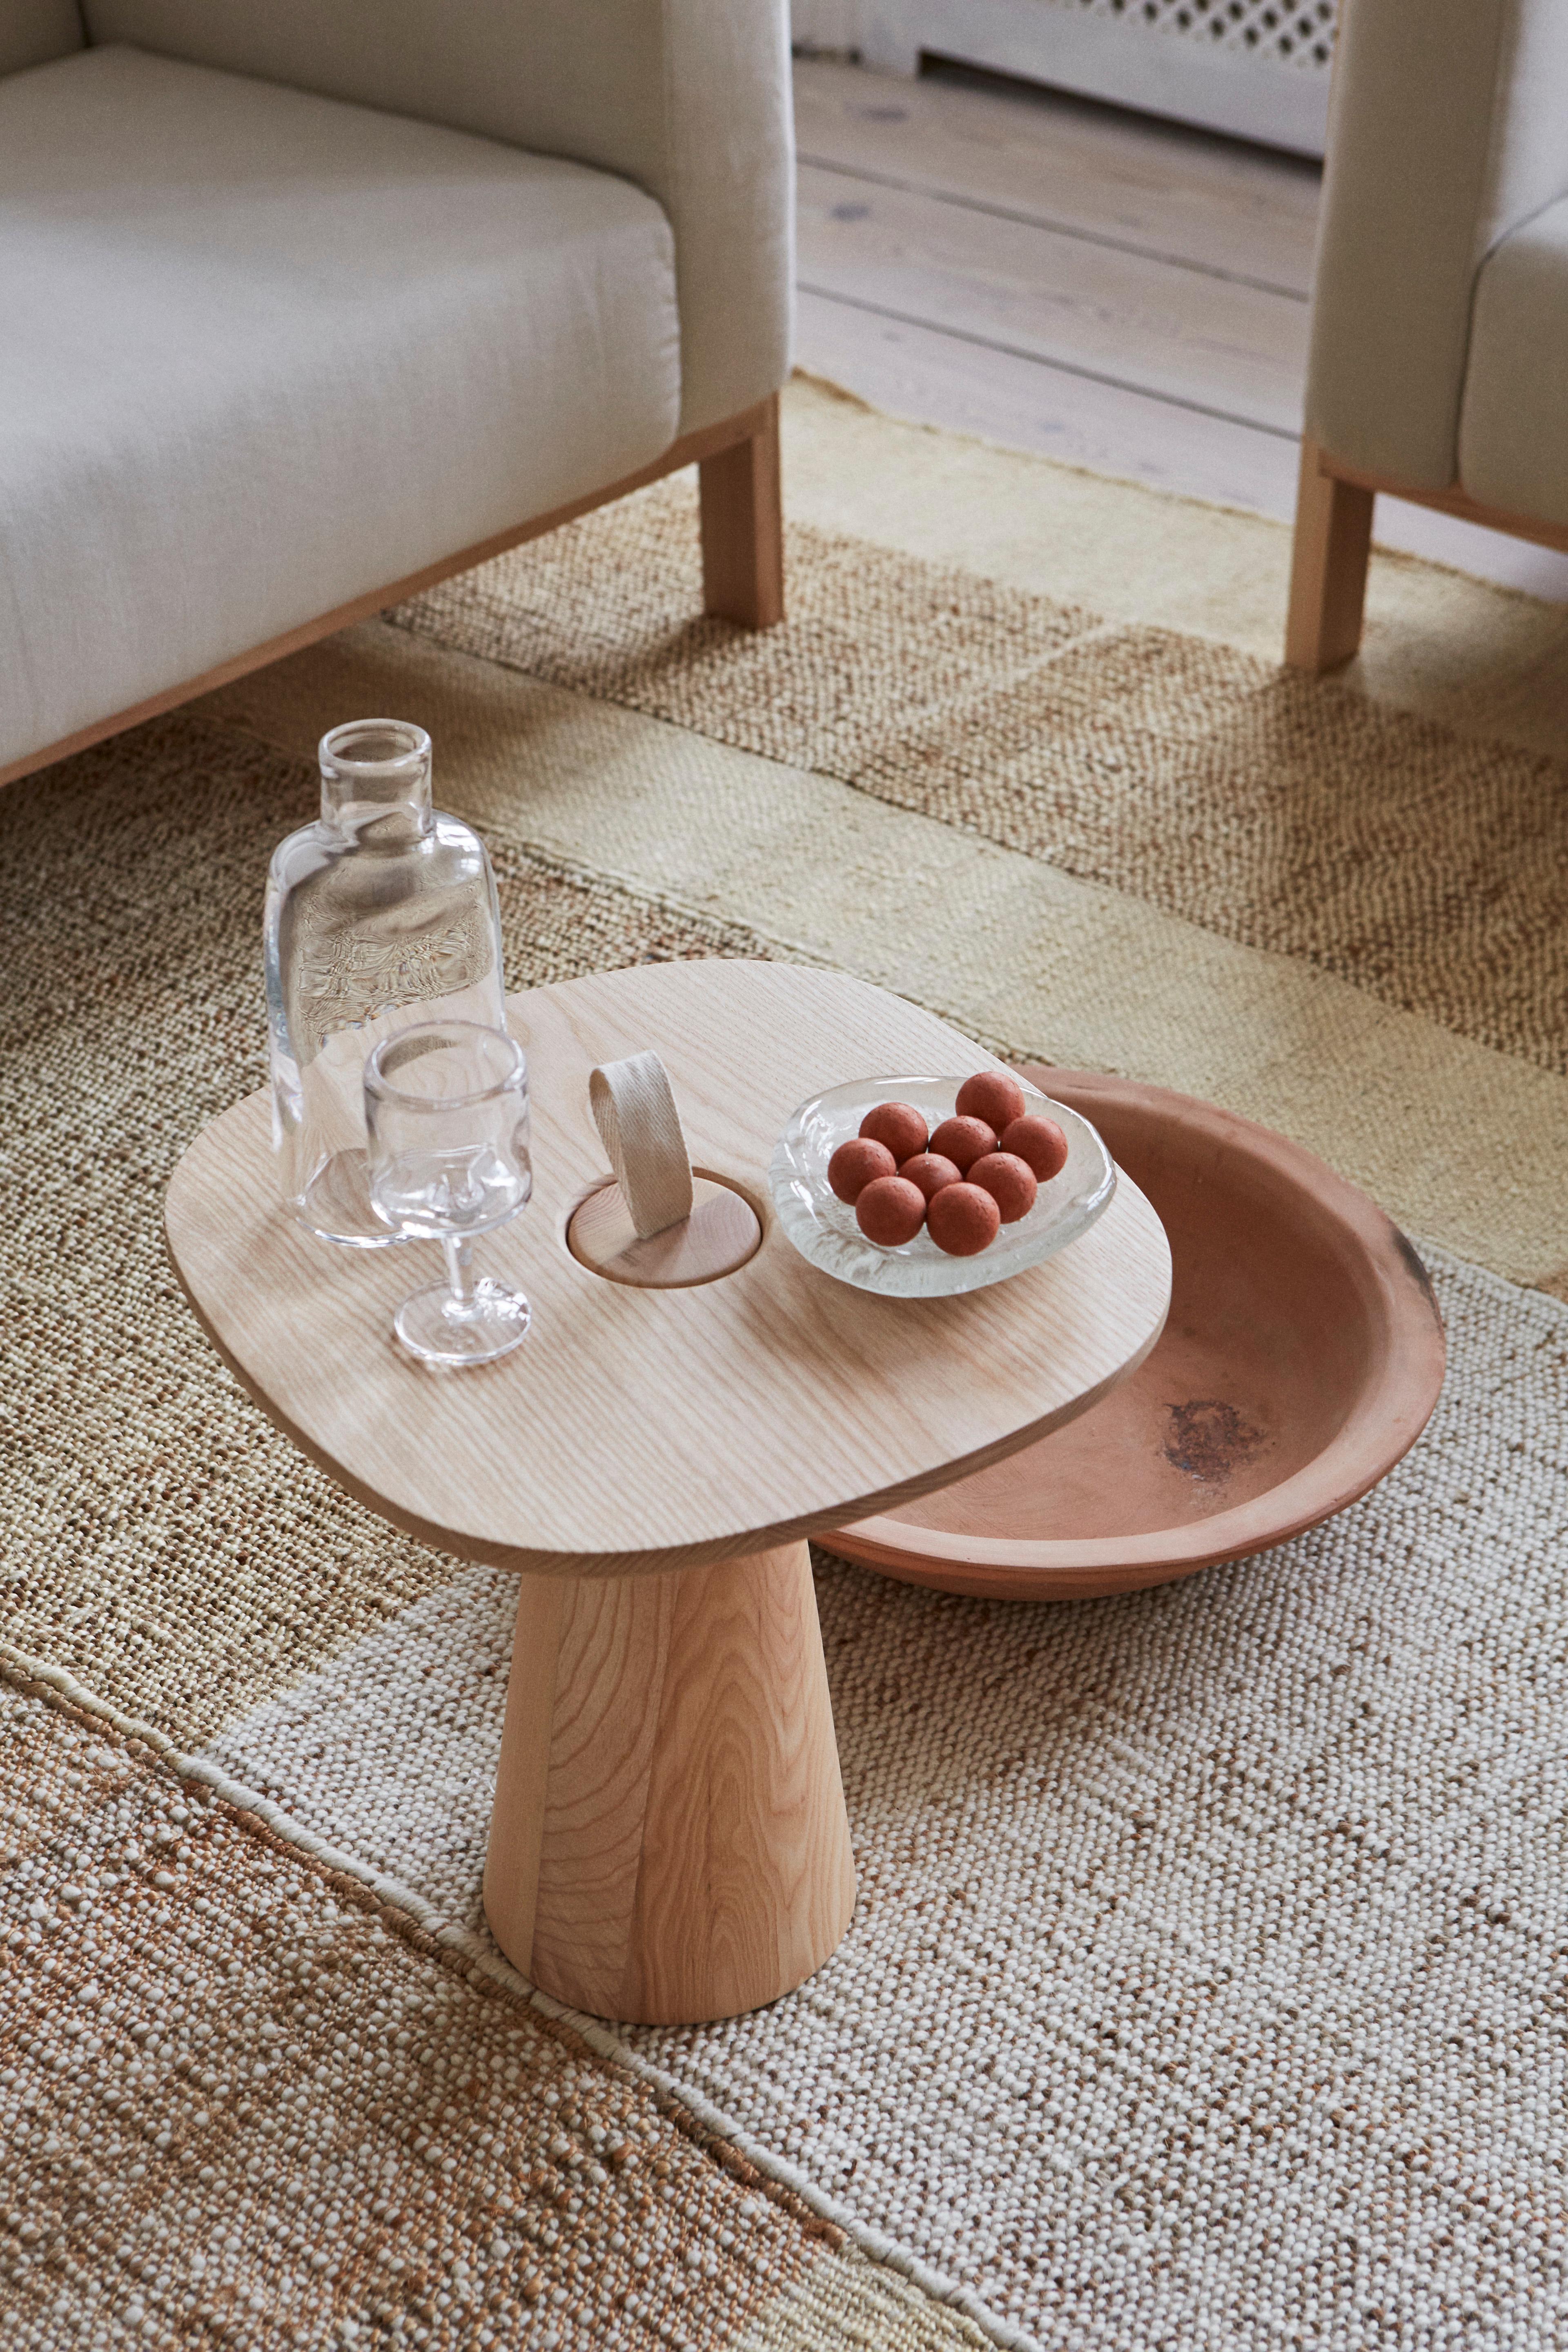 Der minimalistische MIGO-Tisch besteht aus zwei Teilen: einer Tischplatte und einem konisch geformten Sockel, dessen Oberseite mit einem Gurt zum Anheben endet.

Die weiche und freundliche Form der Platte macht den Tisch für verschiedene